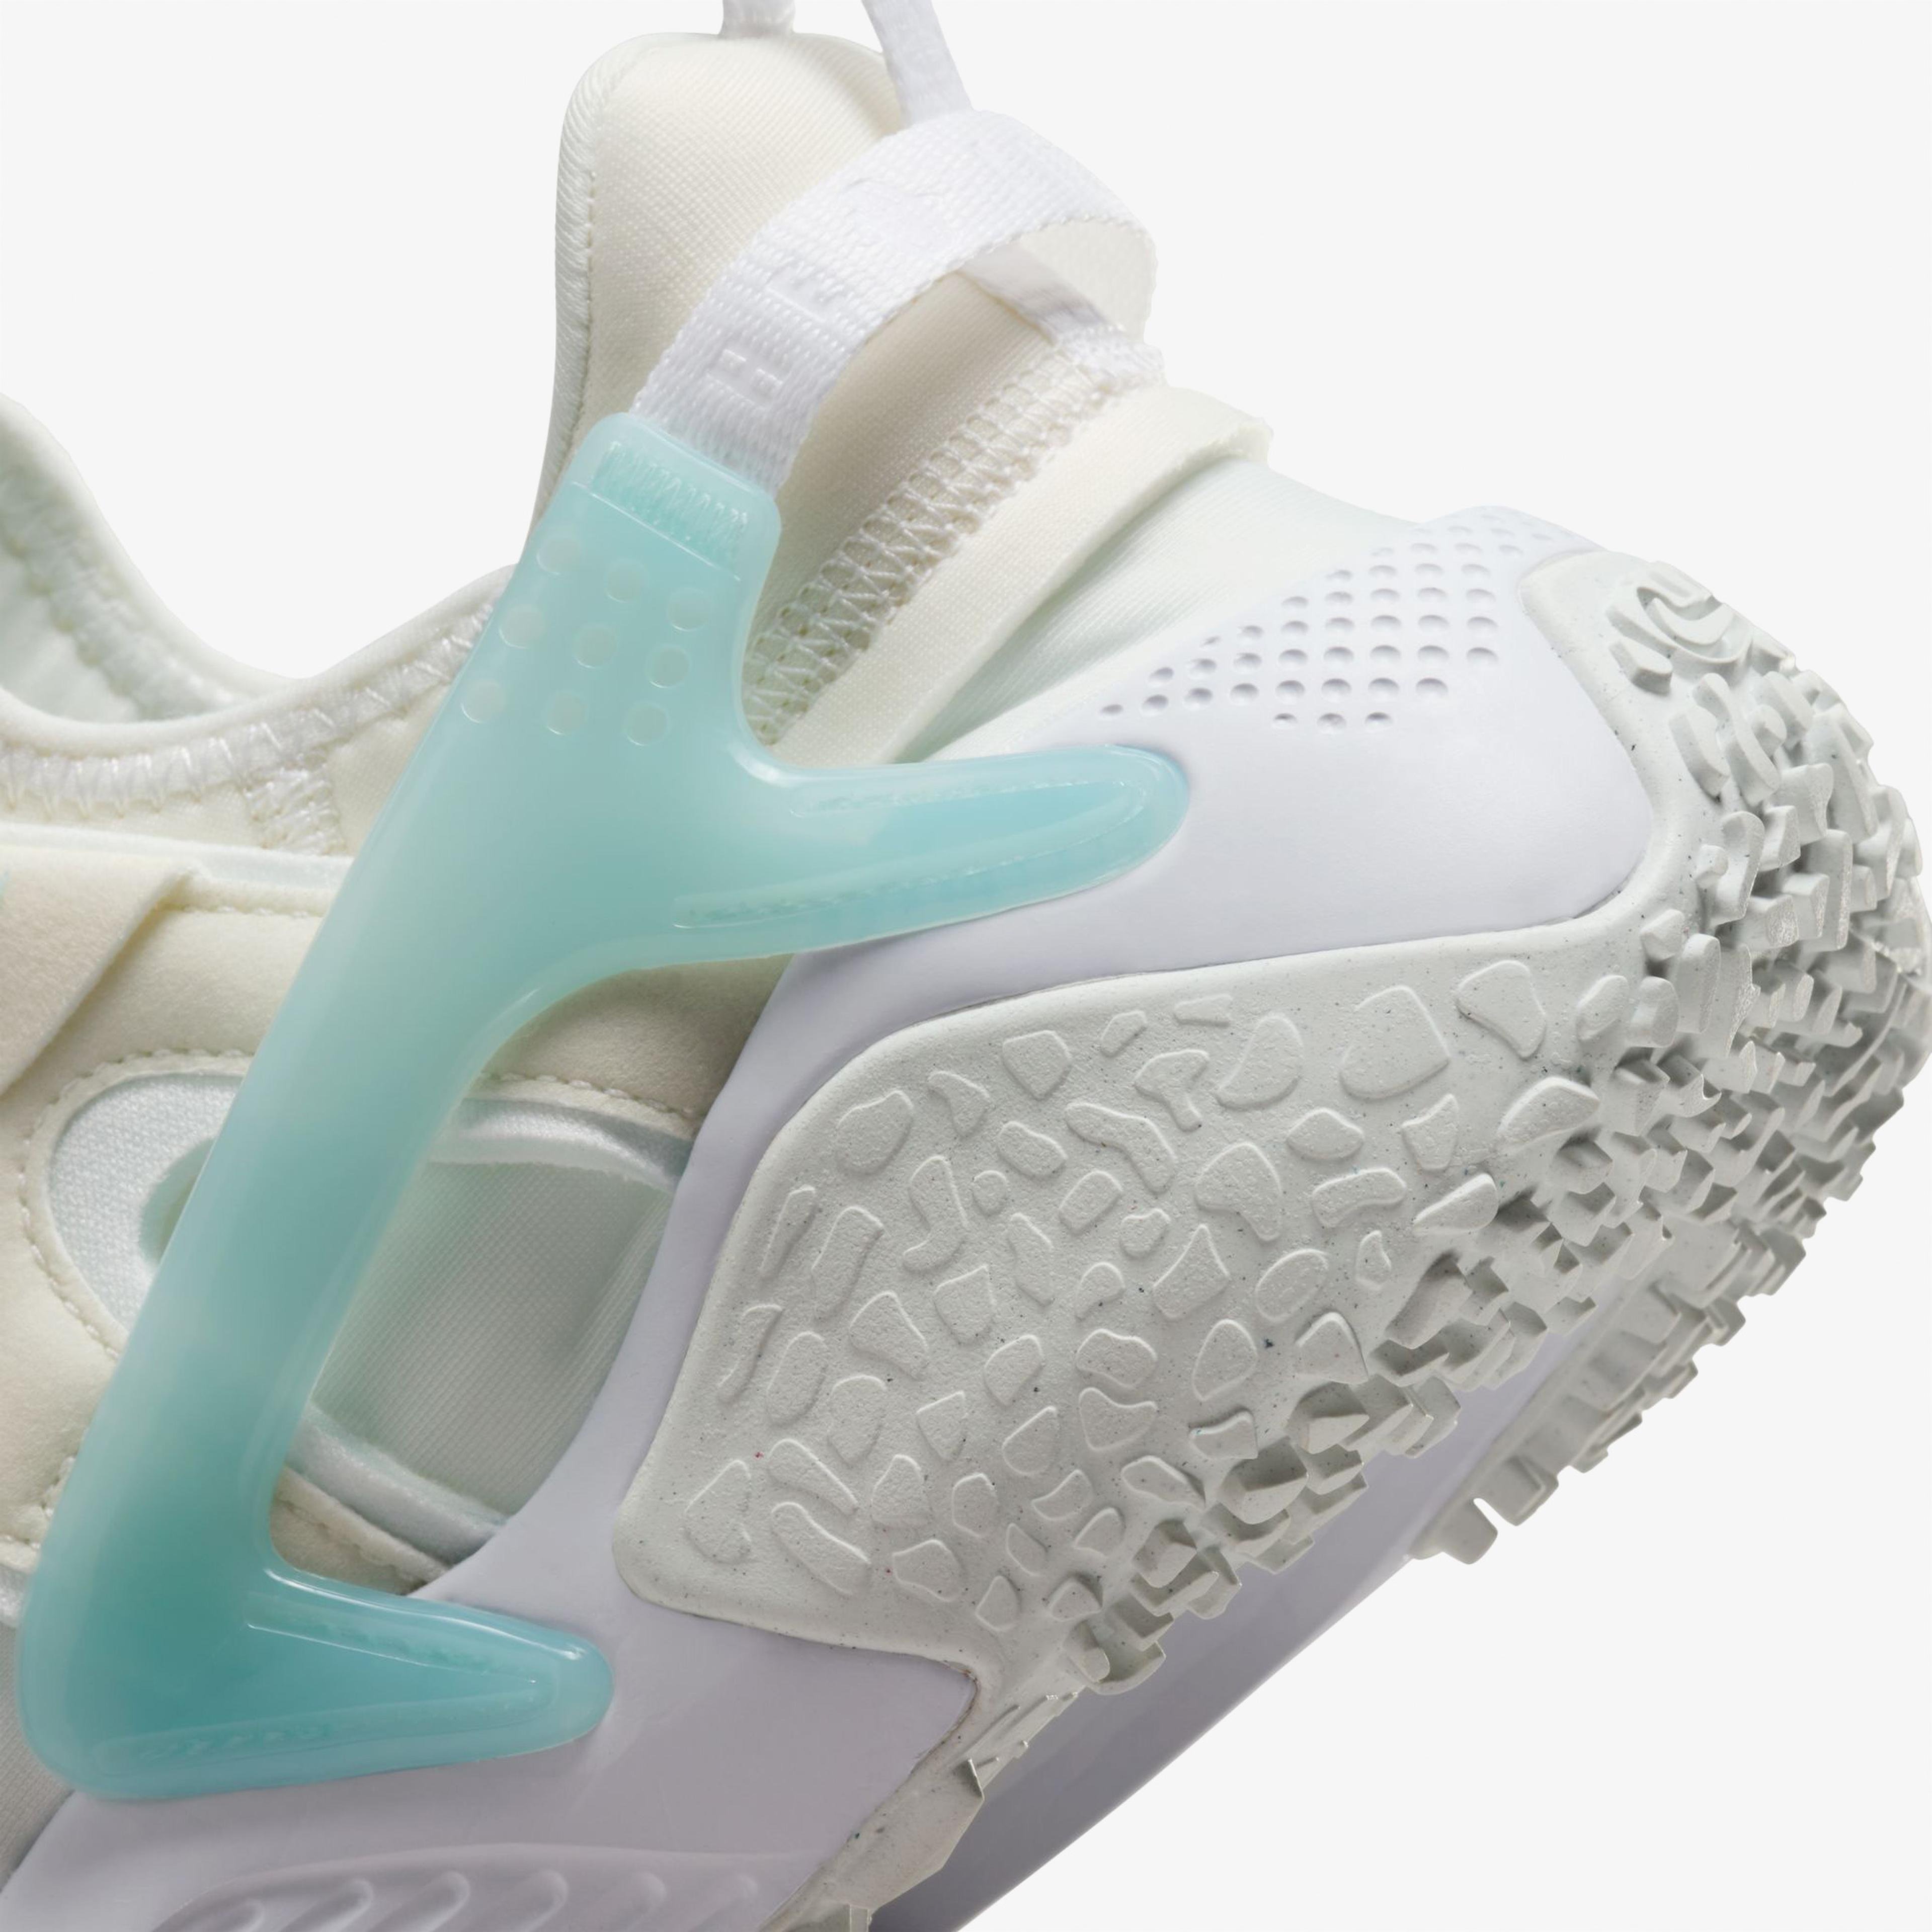 Nike Air Huarache Craft Kadın Beyaz Spor Ayakkabı